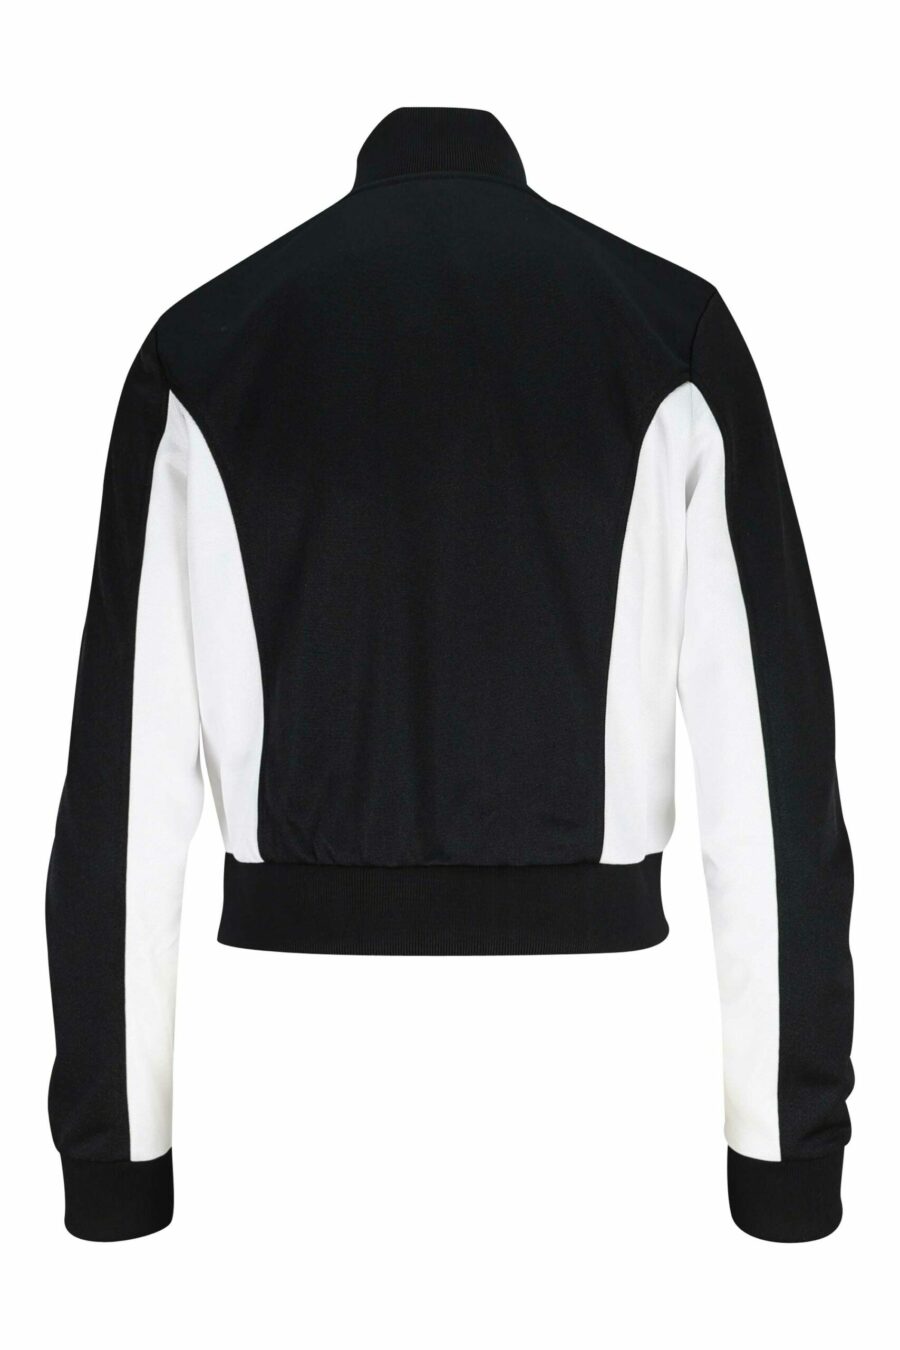 Schwarzes Sweatshirt mit weißem und weißem "boke flower" Mini-Logo - 3612230582910 1 skaliert